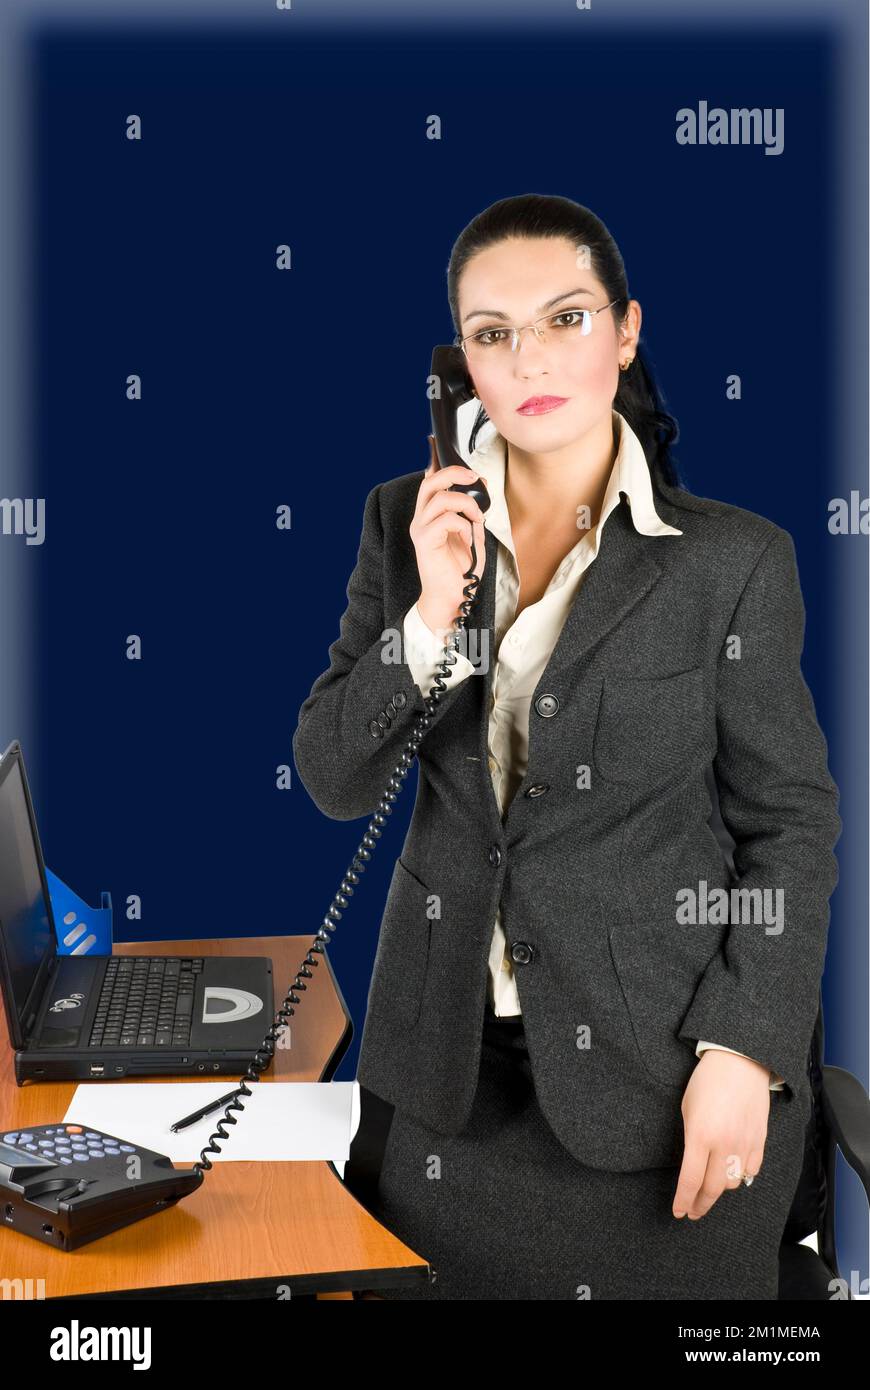 Femme d'affaires avec téléphone à son bureau Banque D'Images